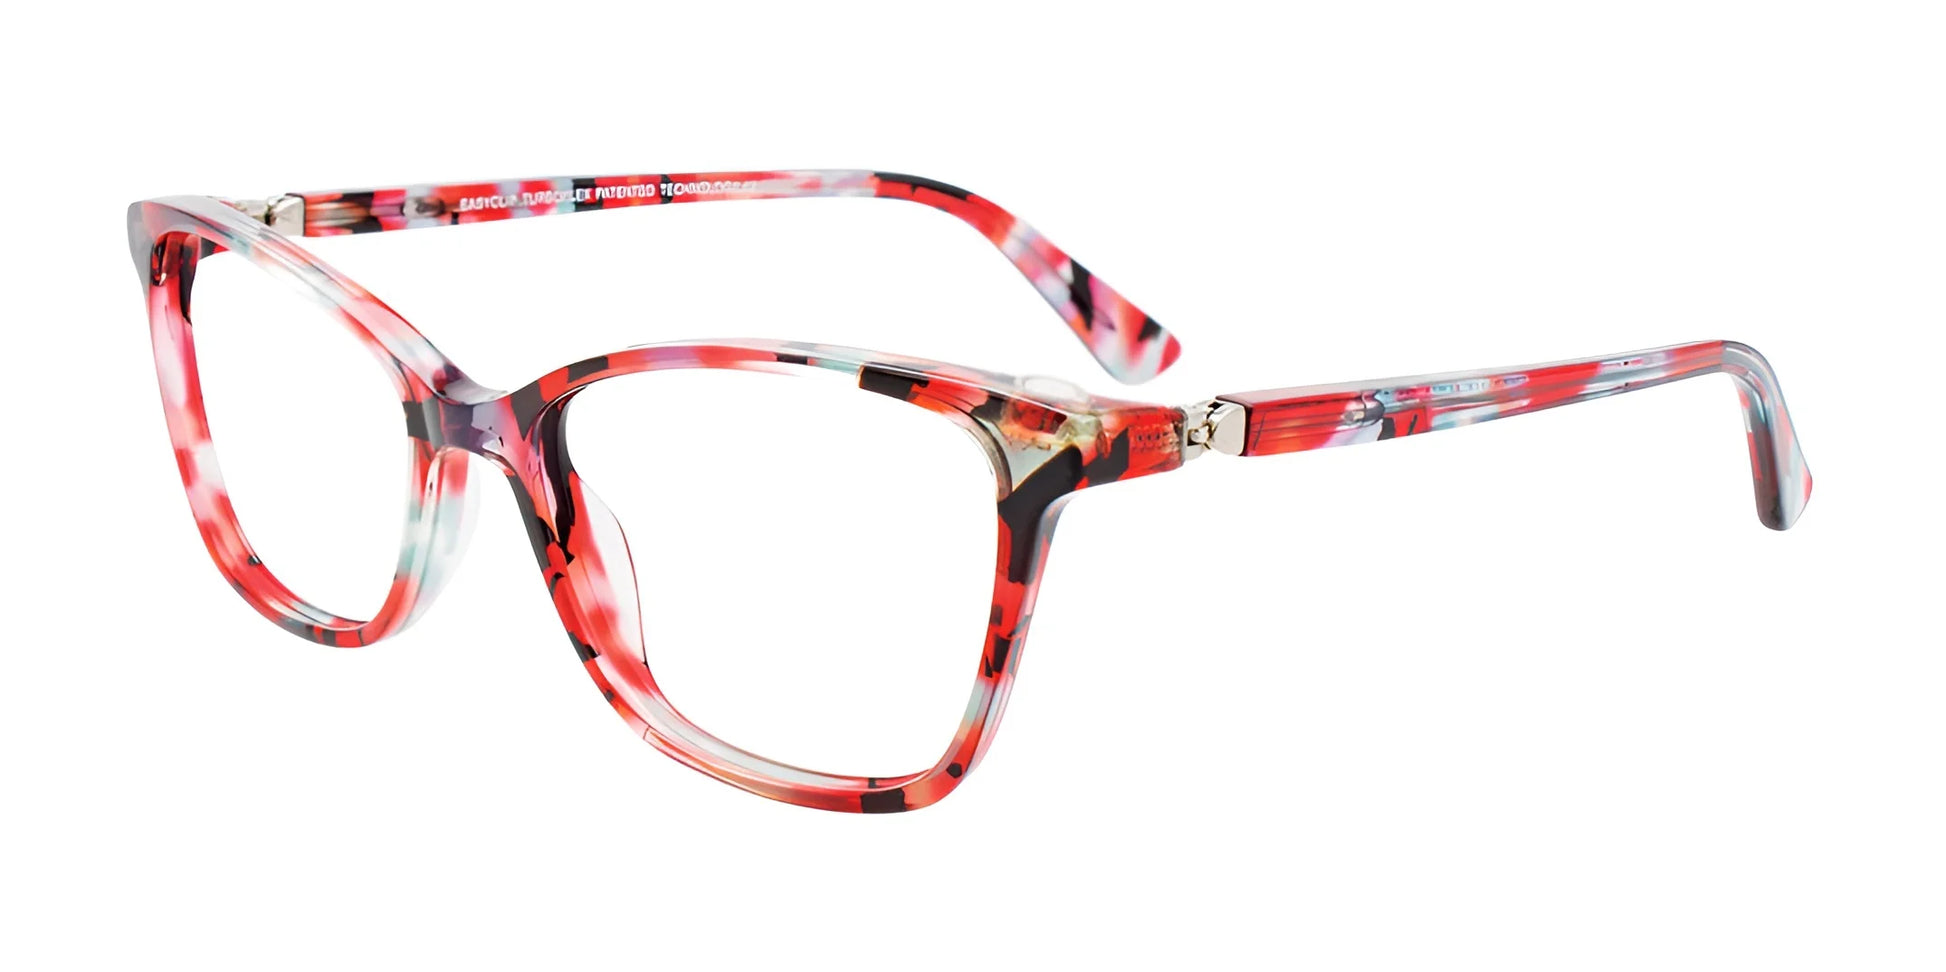 EasyClip EC526 Eyeglasses Red & Light Blue & Black Marbled